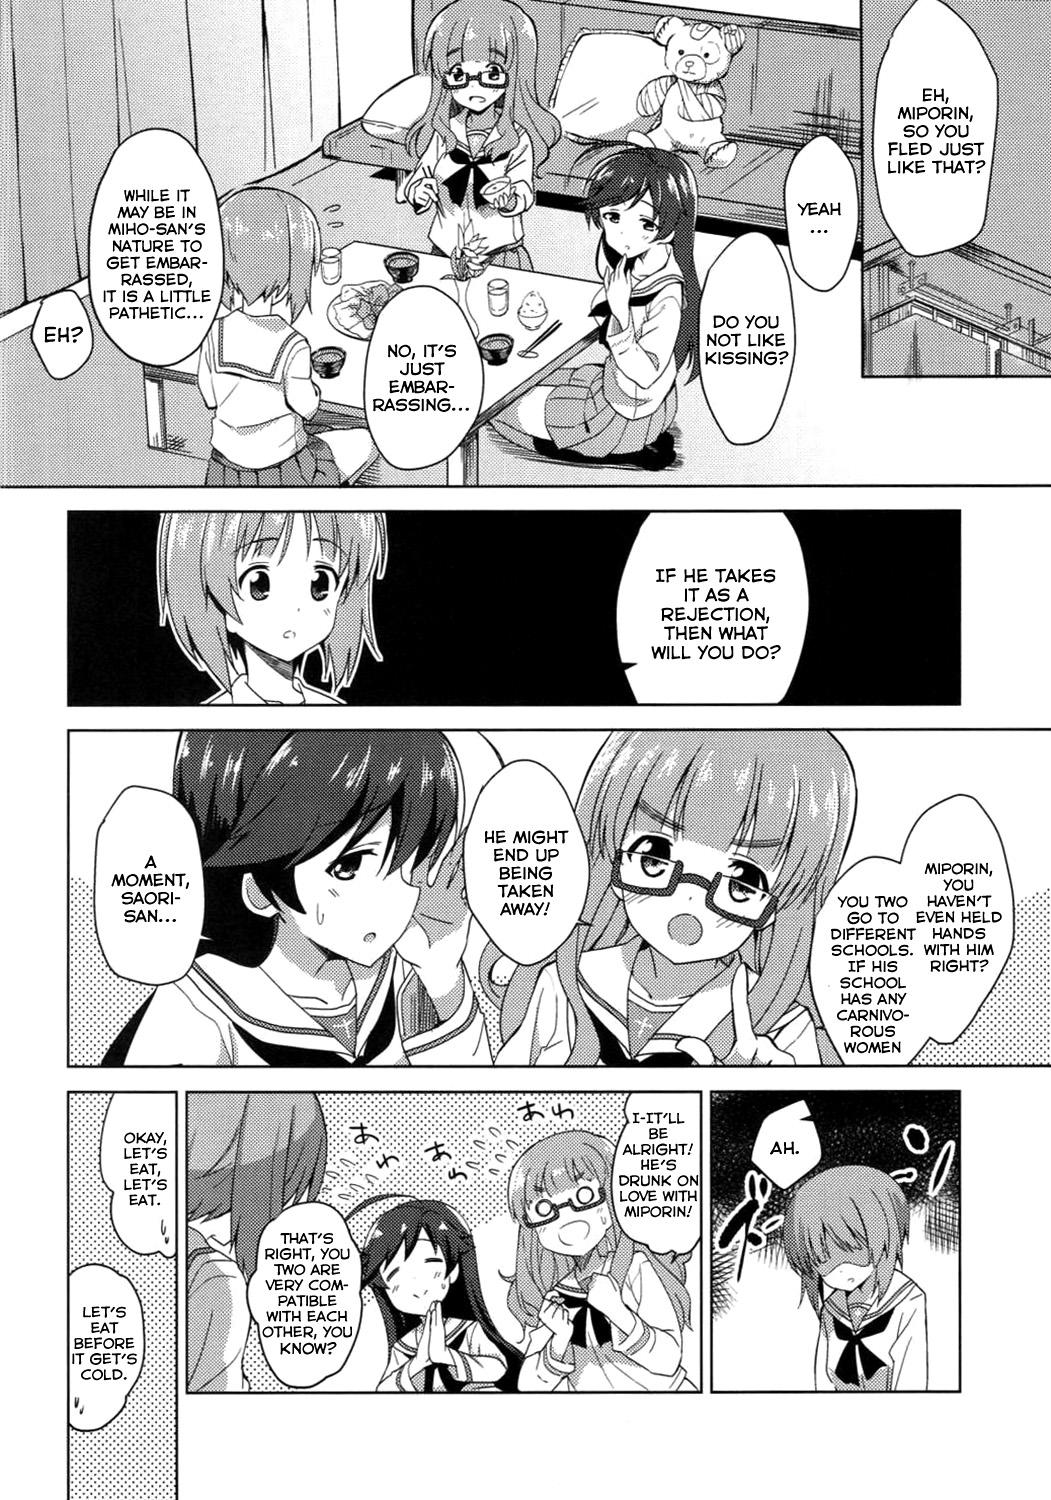 Para Watashi, Motto Ganbarimasu! - I will do my best more! - Girls und panzer Long - Page 5